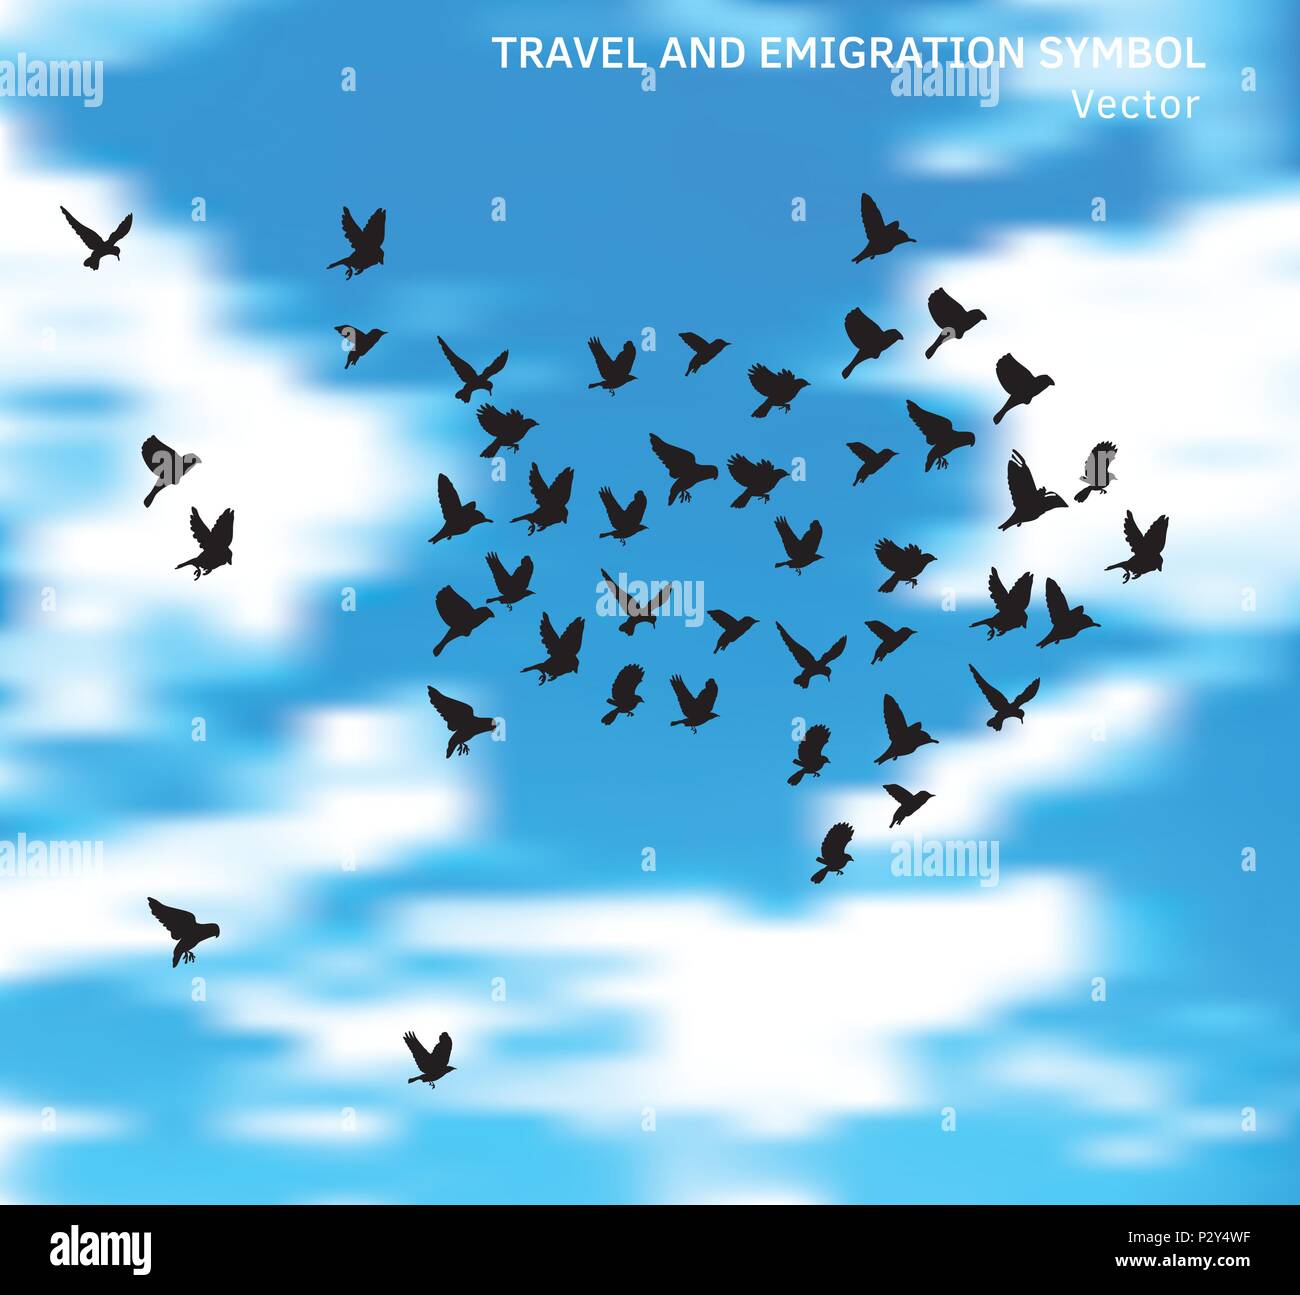 Reise- und Auswanderung Vögel Symbol in Blau wolken himmel. Stock Vektor